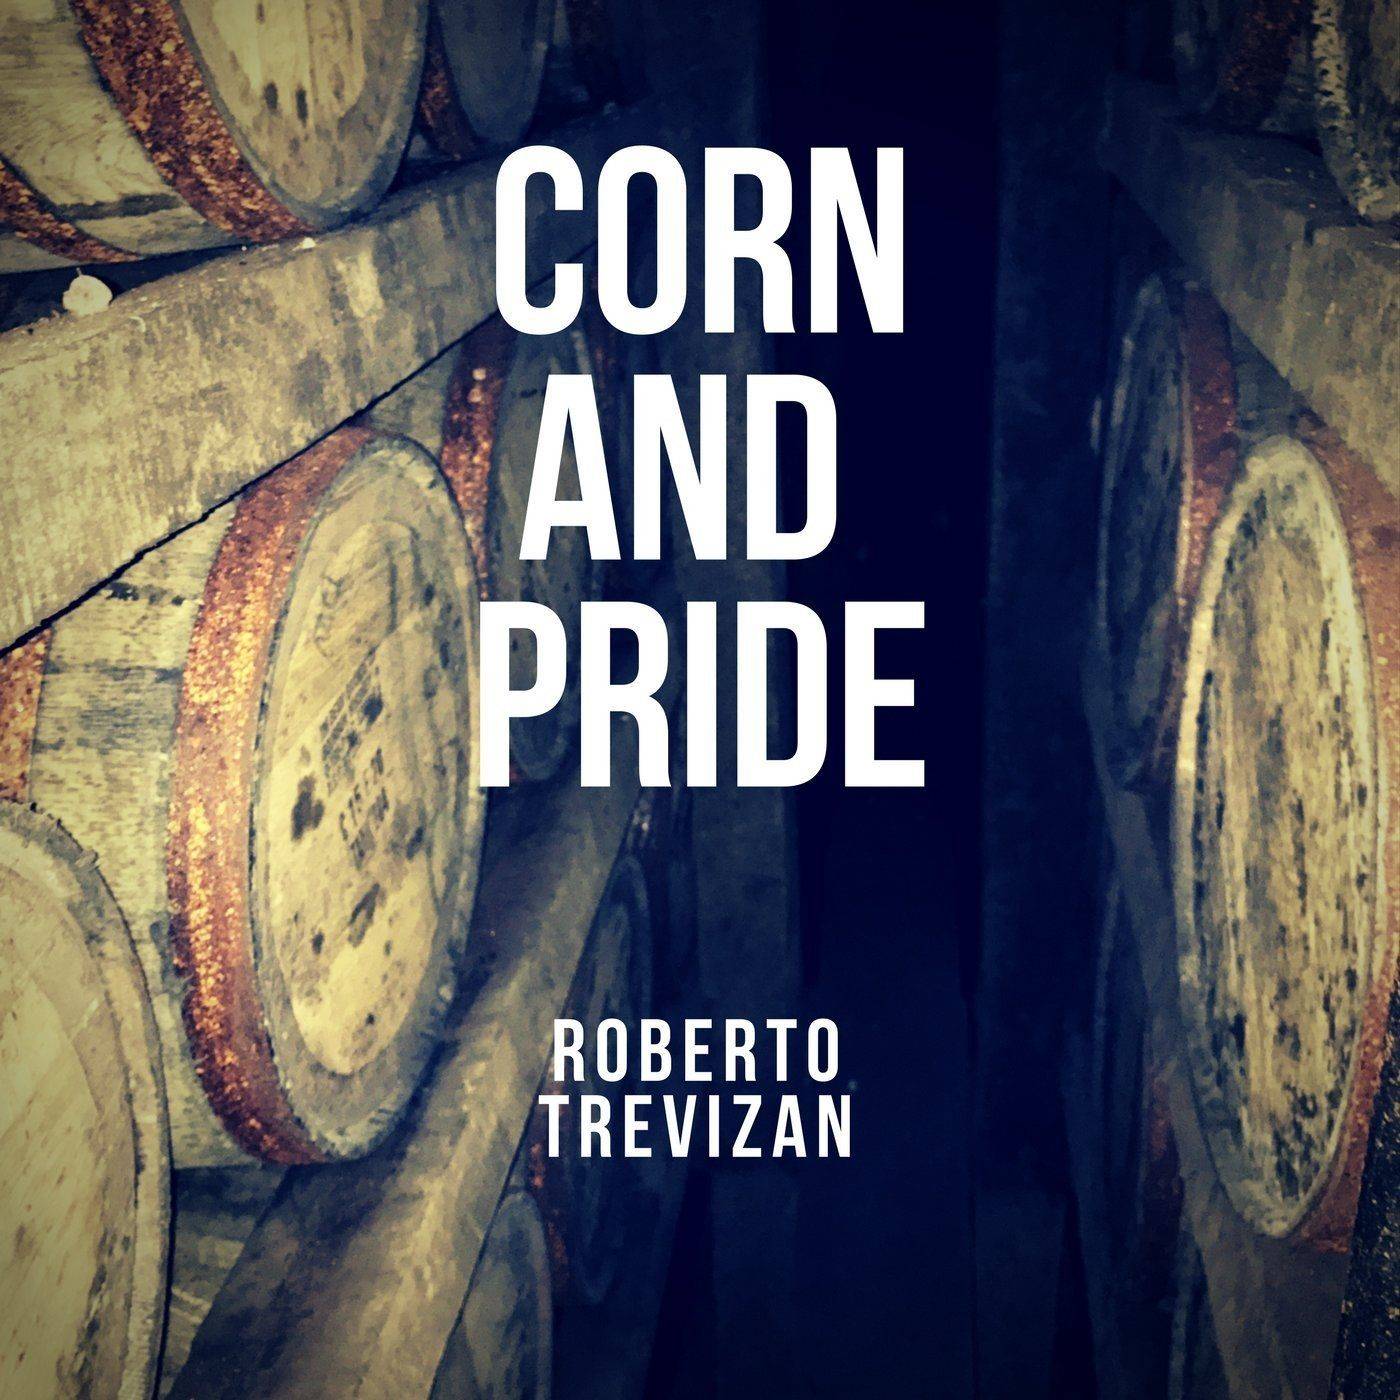 Corn and Pride